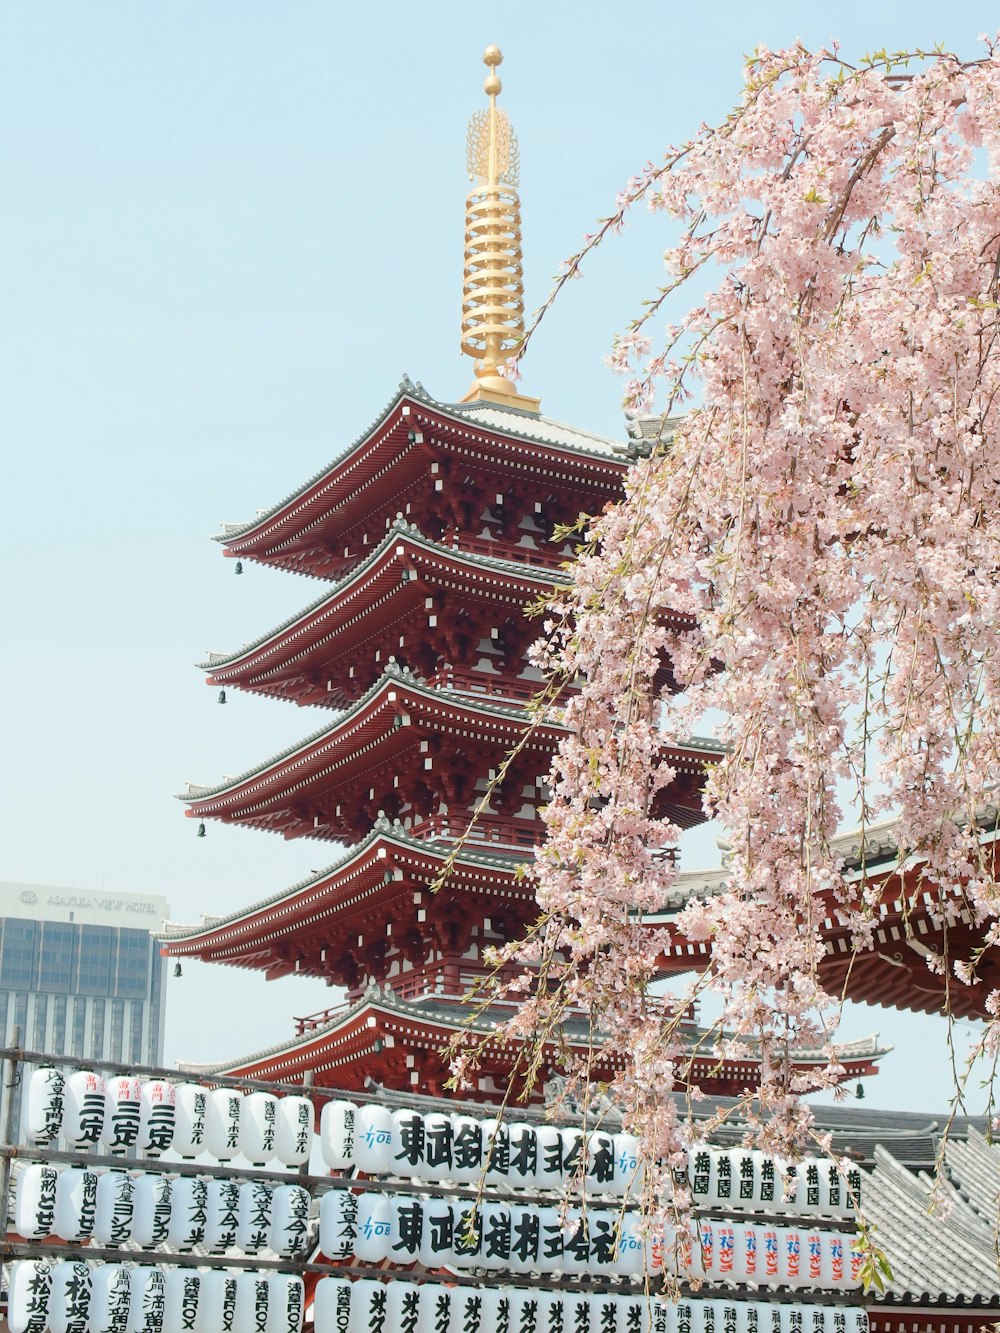 pagode brune et or près de la fleur de cerisier